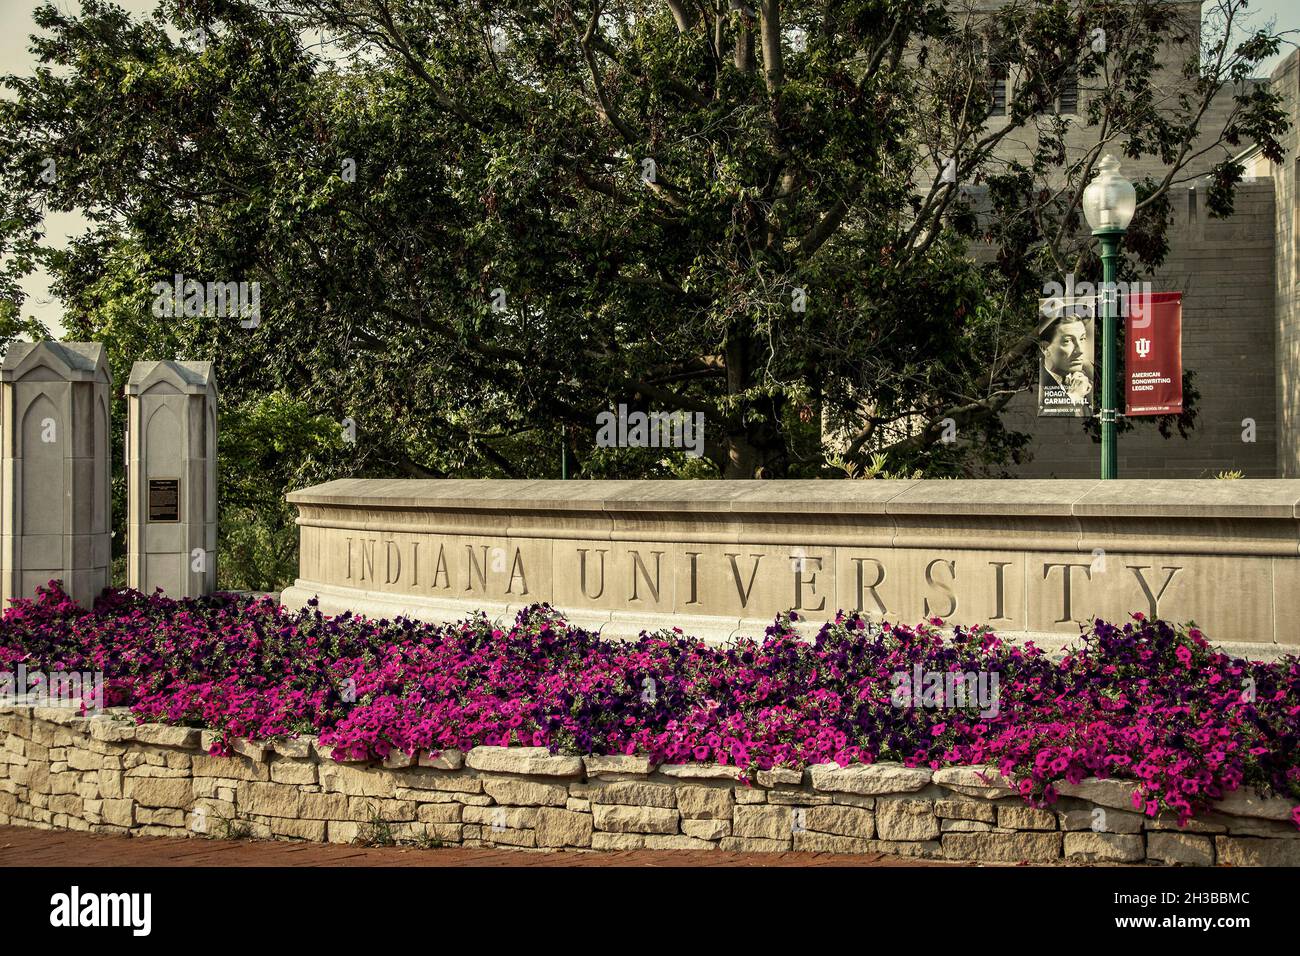 07 30 2021 Bloomington USA - Gate into Indiana University avec une jardinière pleine de fleurs rose vif et un panneau sur le lampost d'Alumni Hogy Carmichael Ameri Banque D'Images